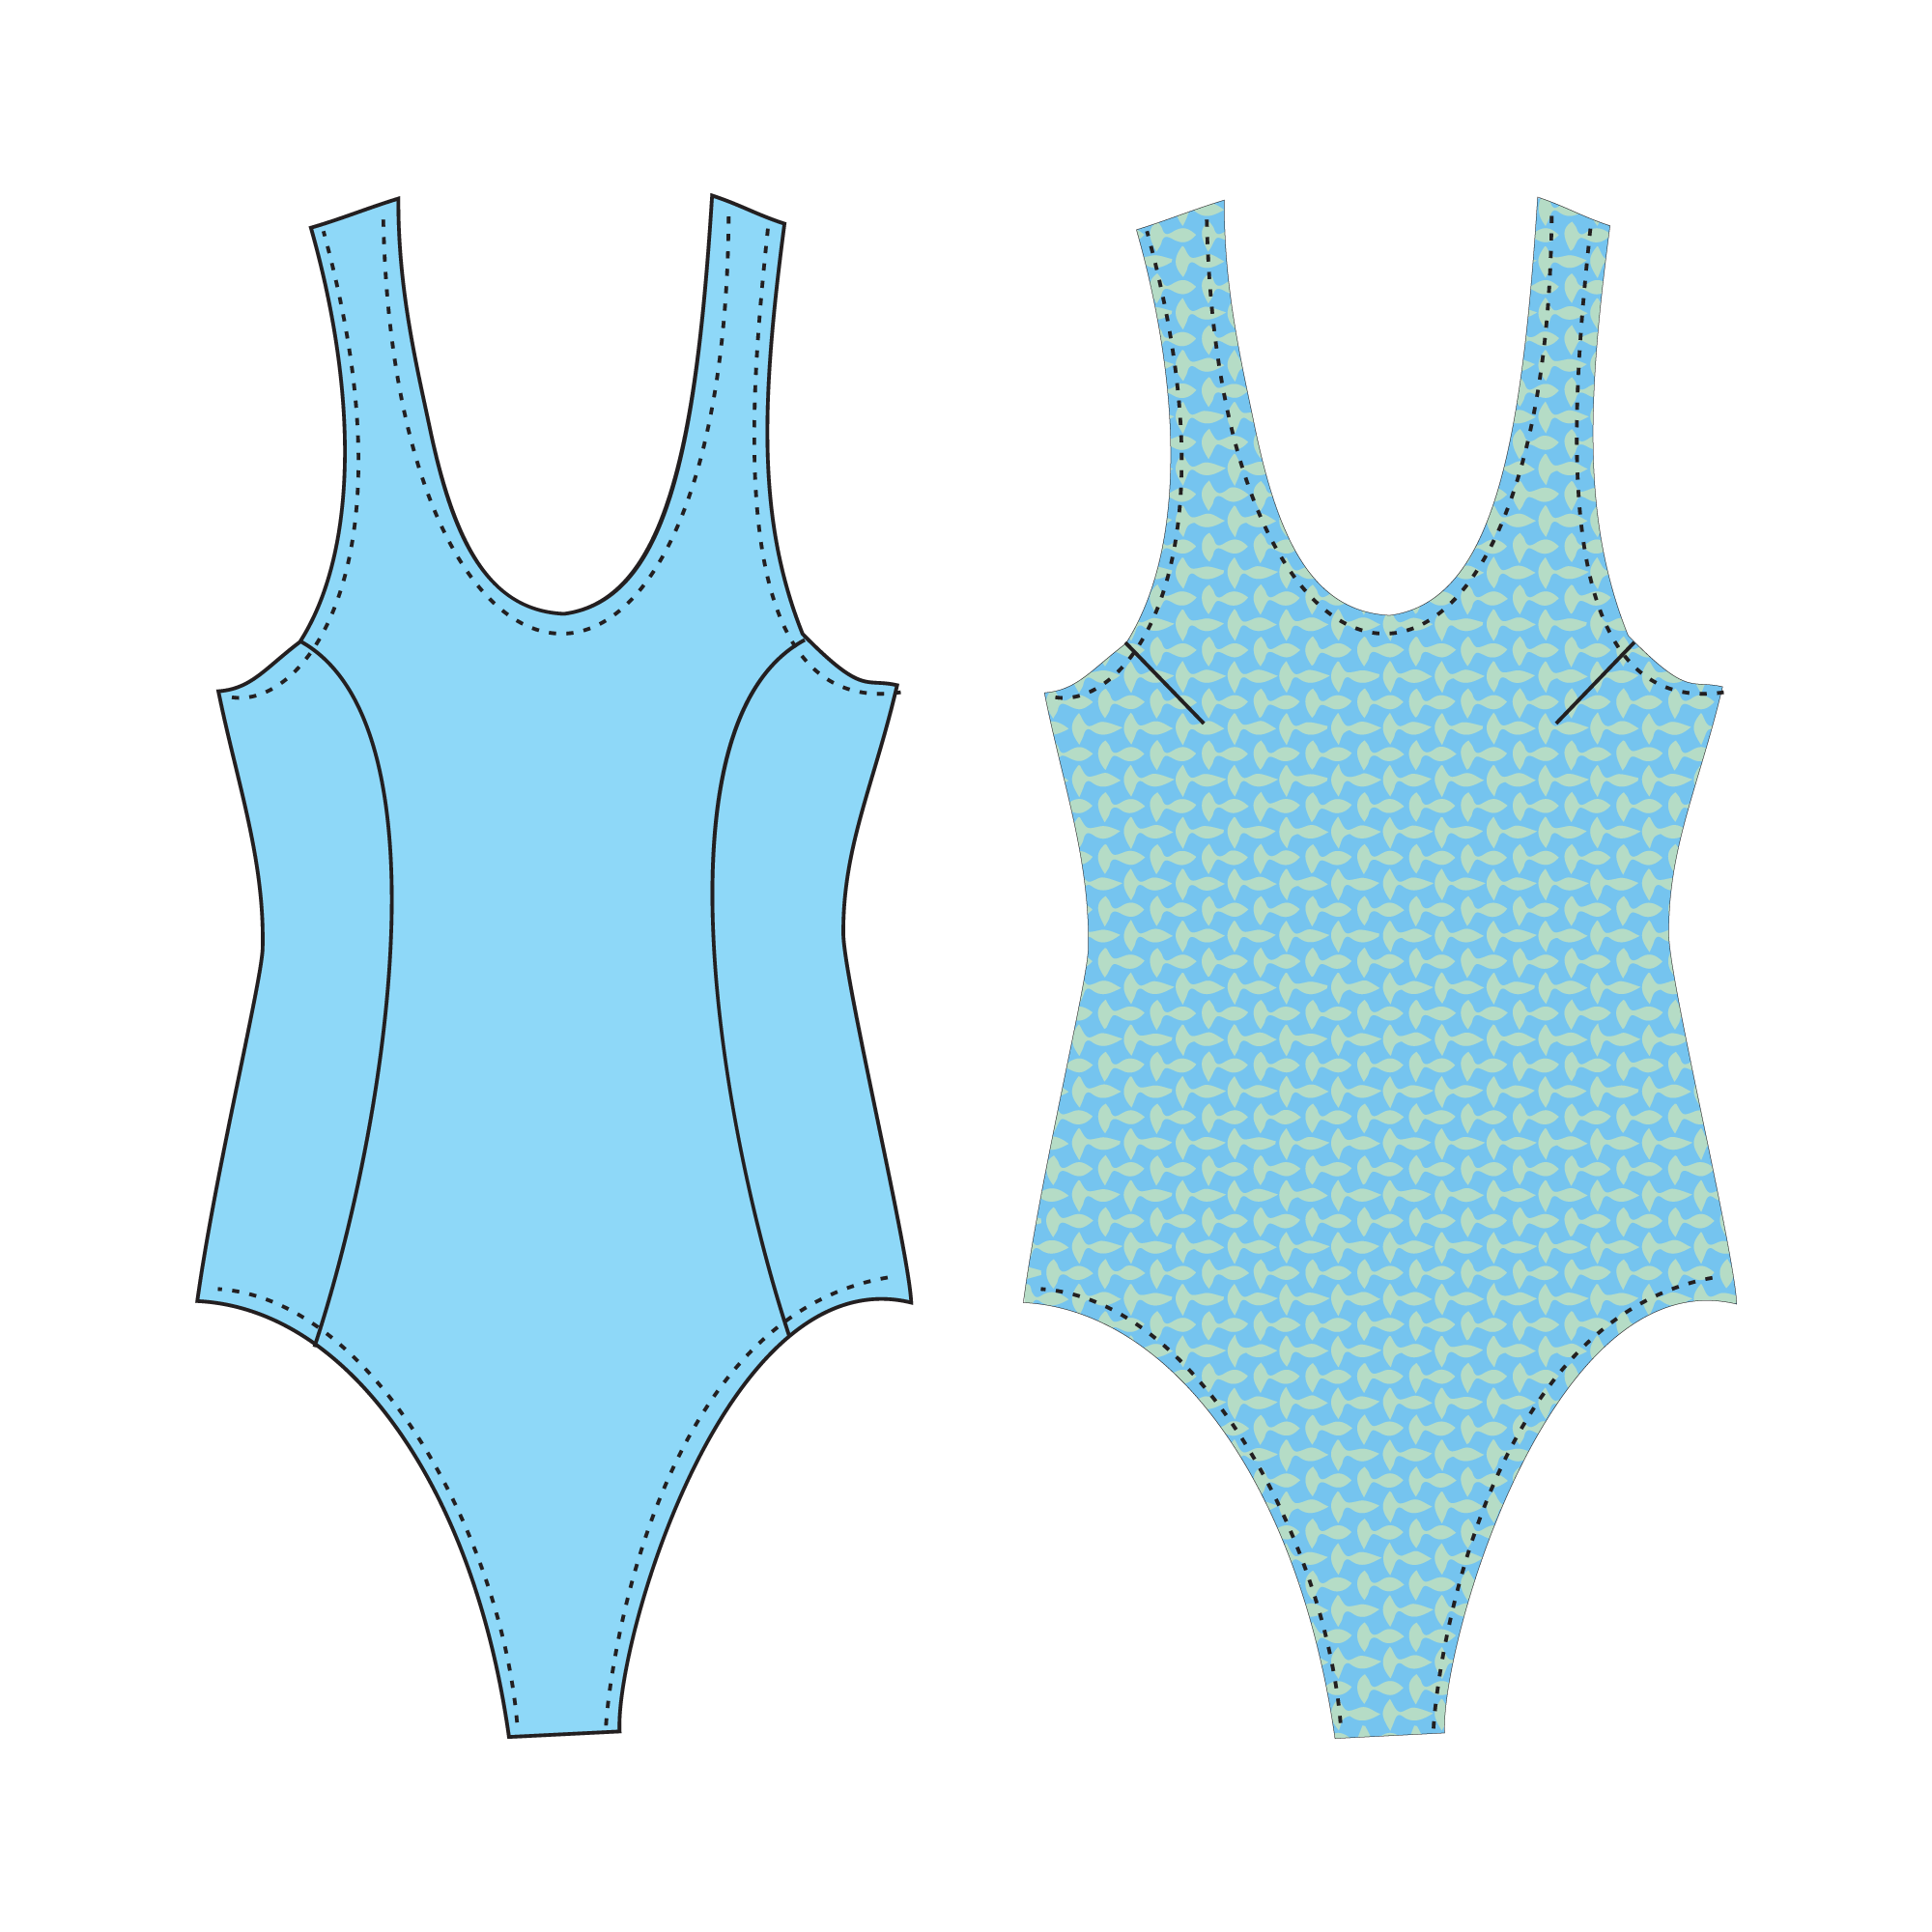 Fun Sun and Swimwear Patterns